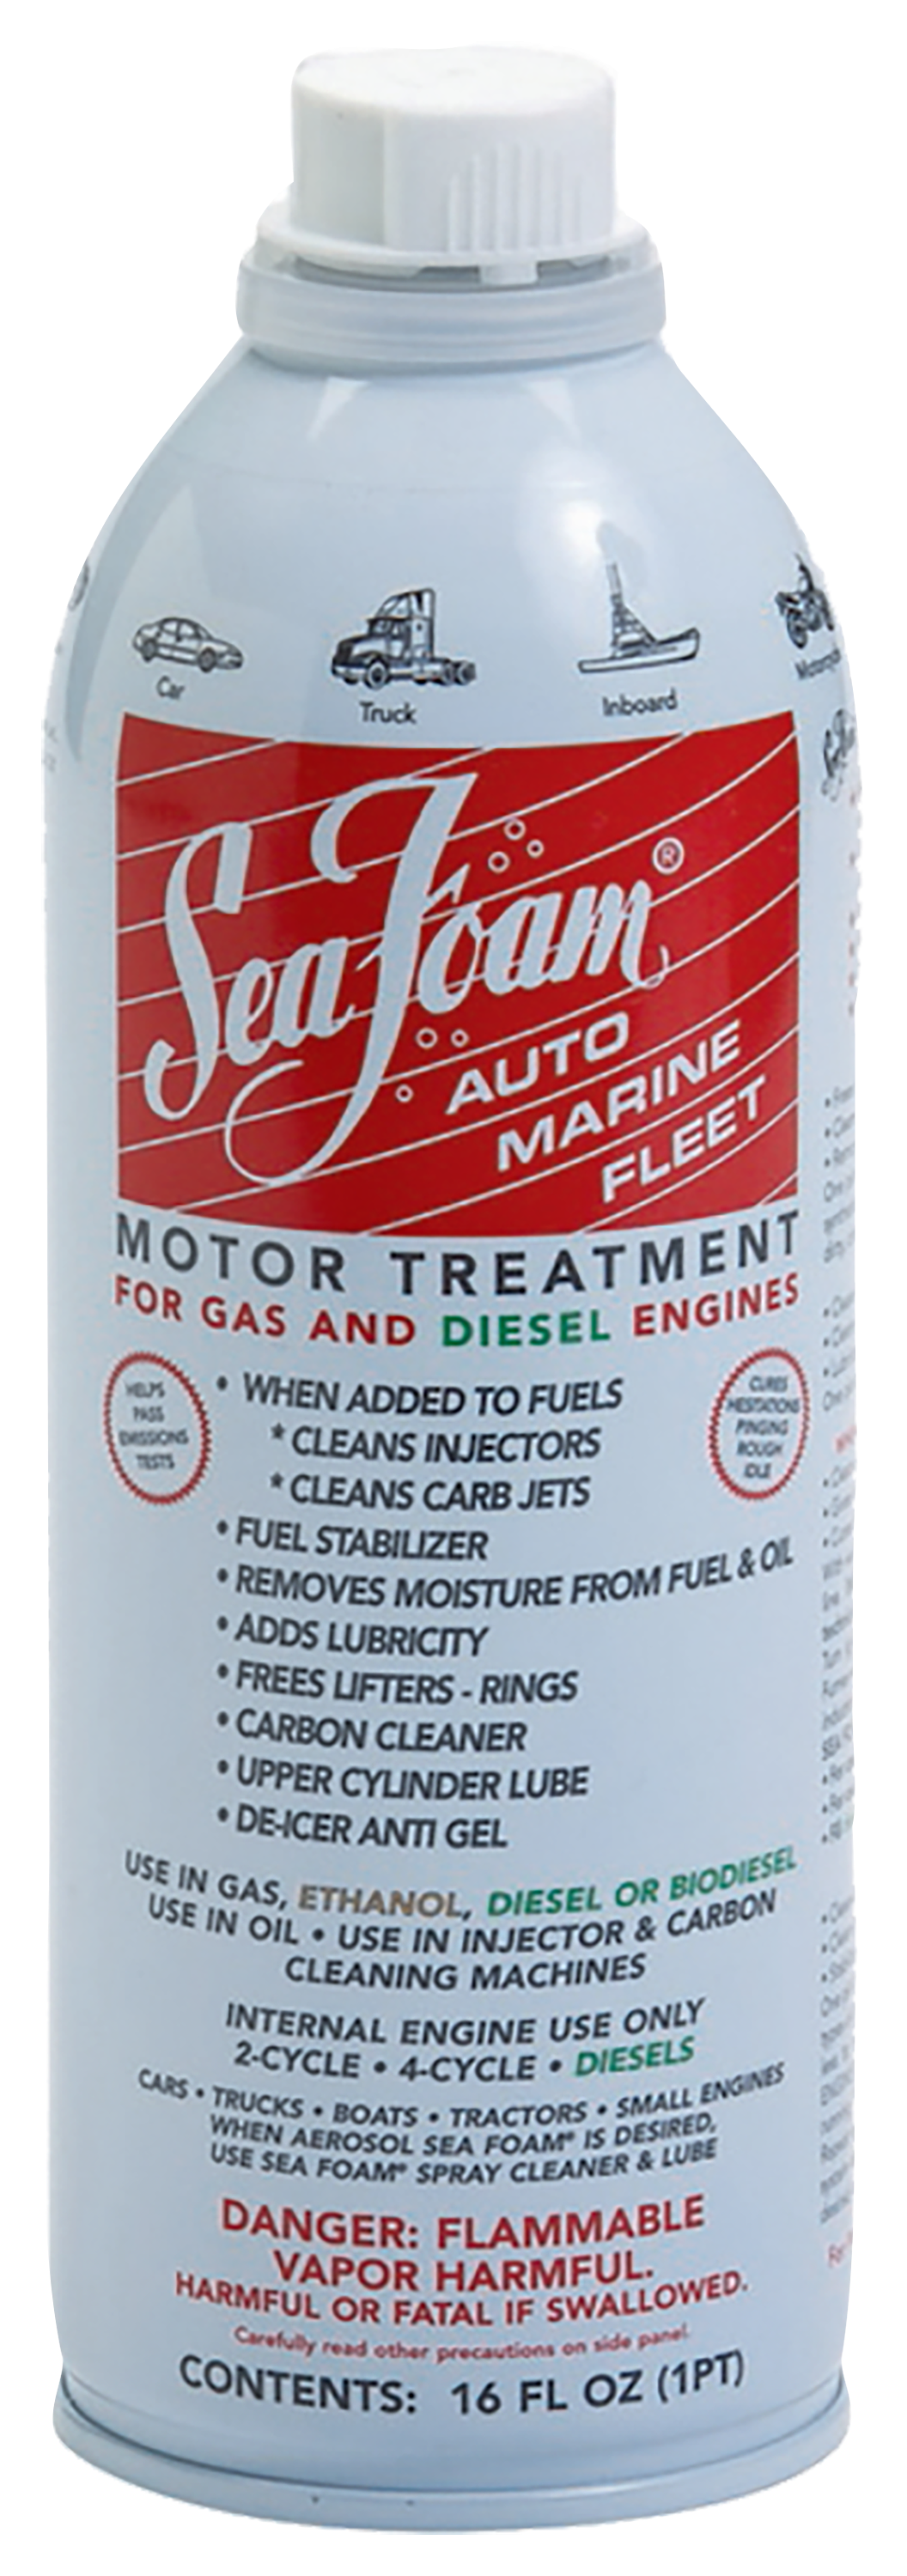 How to use Sea Foam Motor Treatment